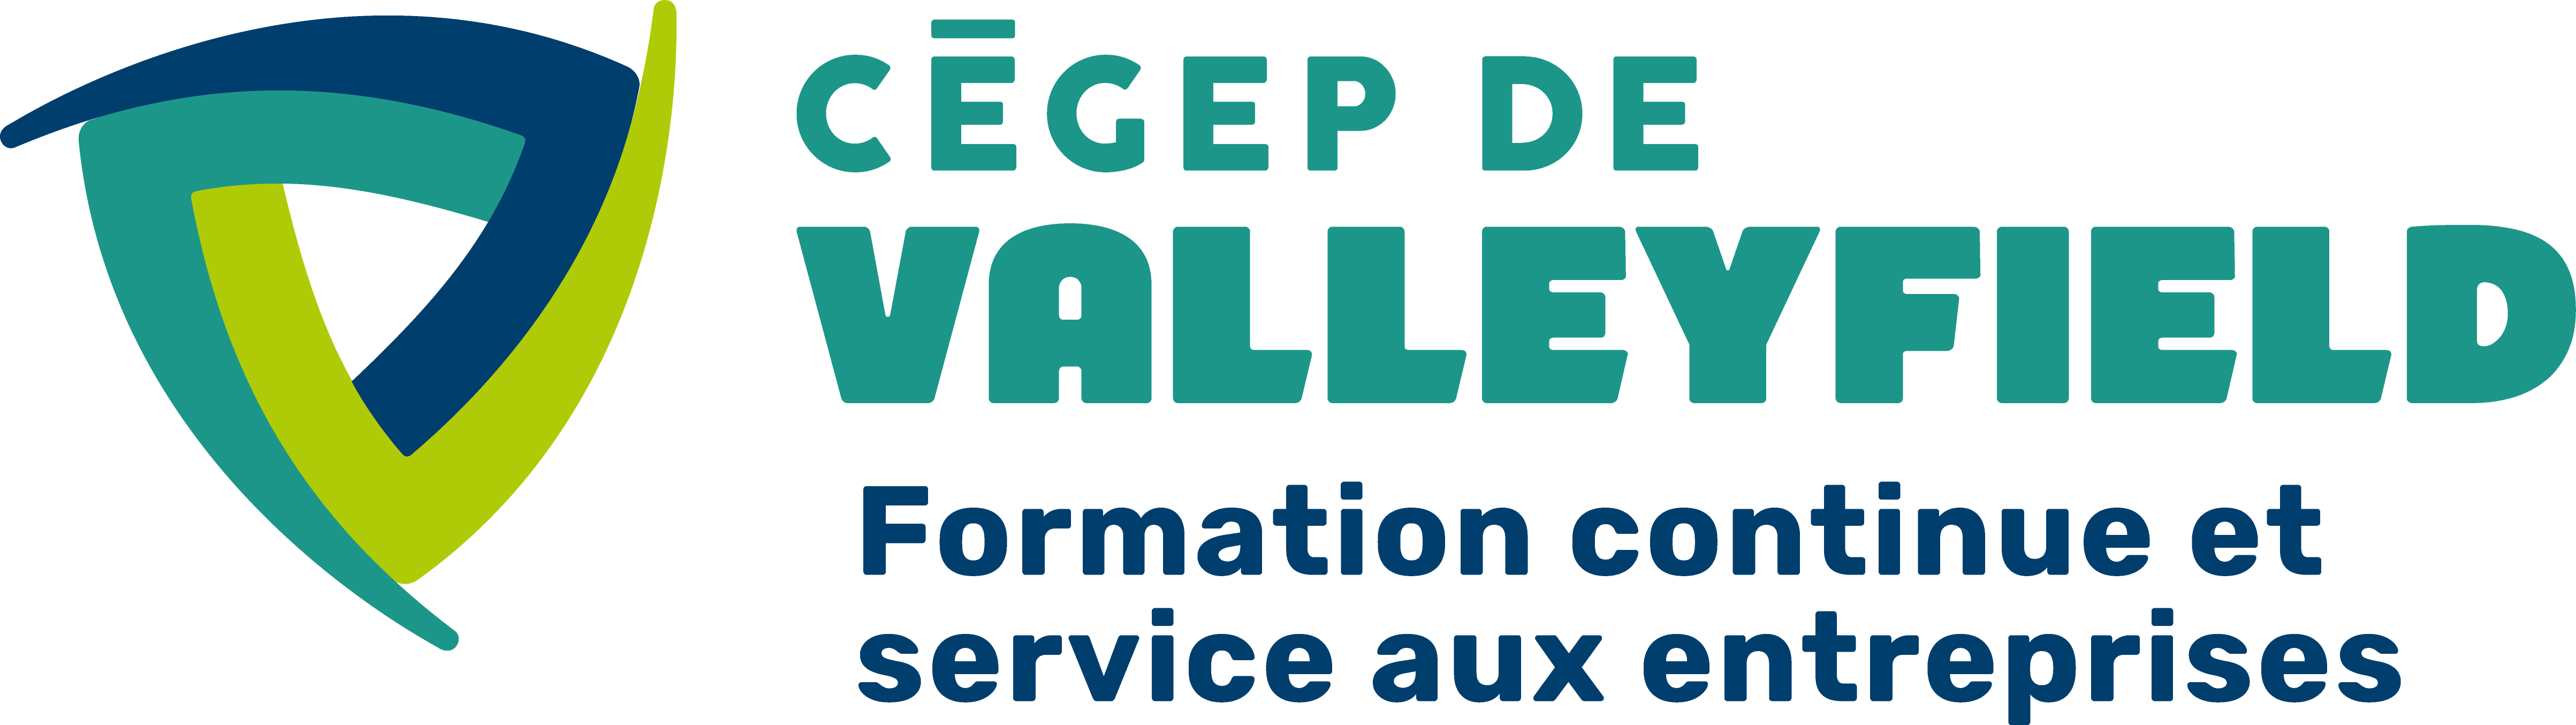 Cegep Valleyfield Nouveau logo FCSAE CMYK 62c98